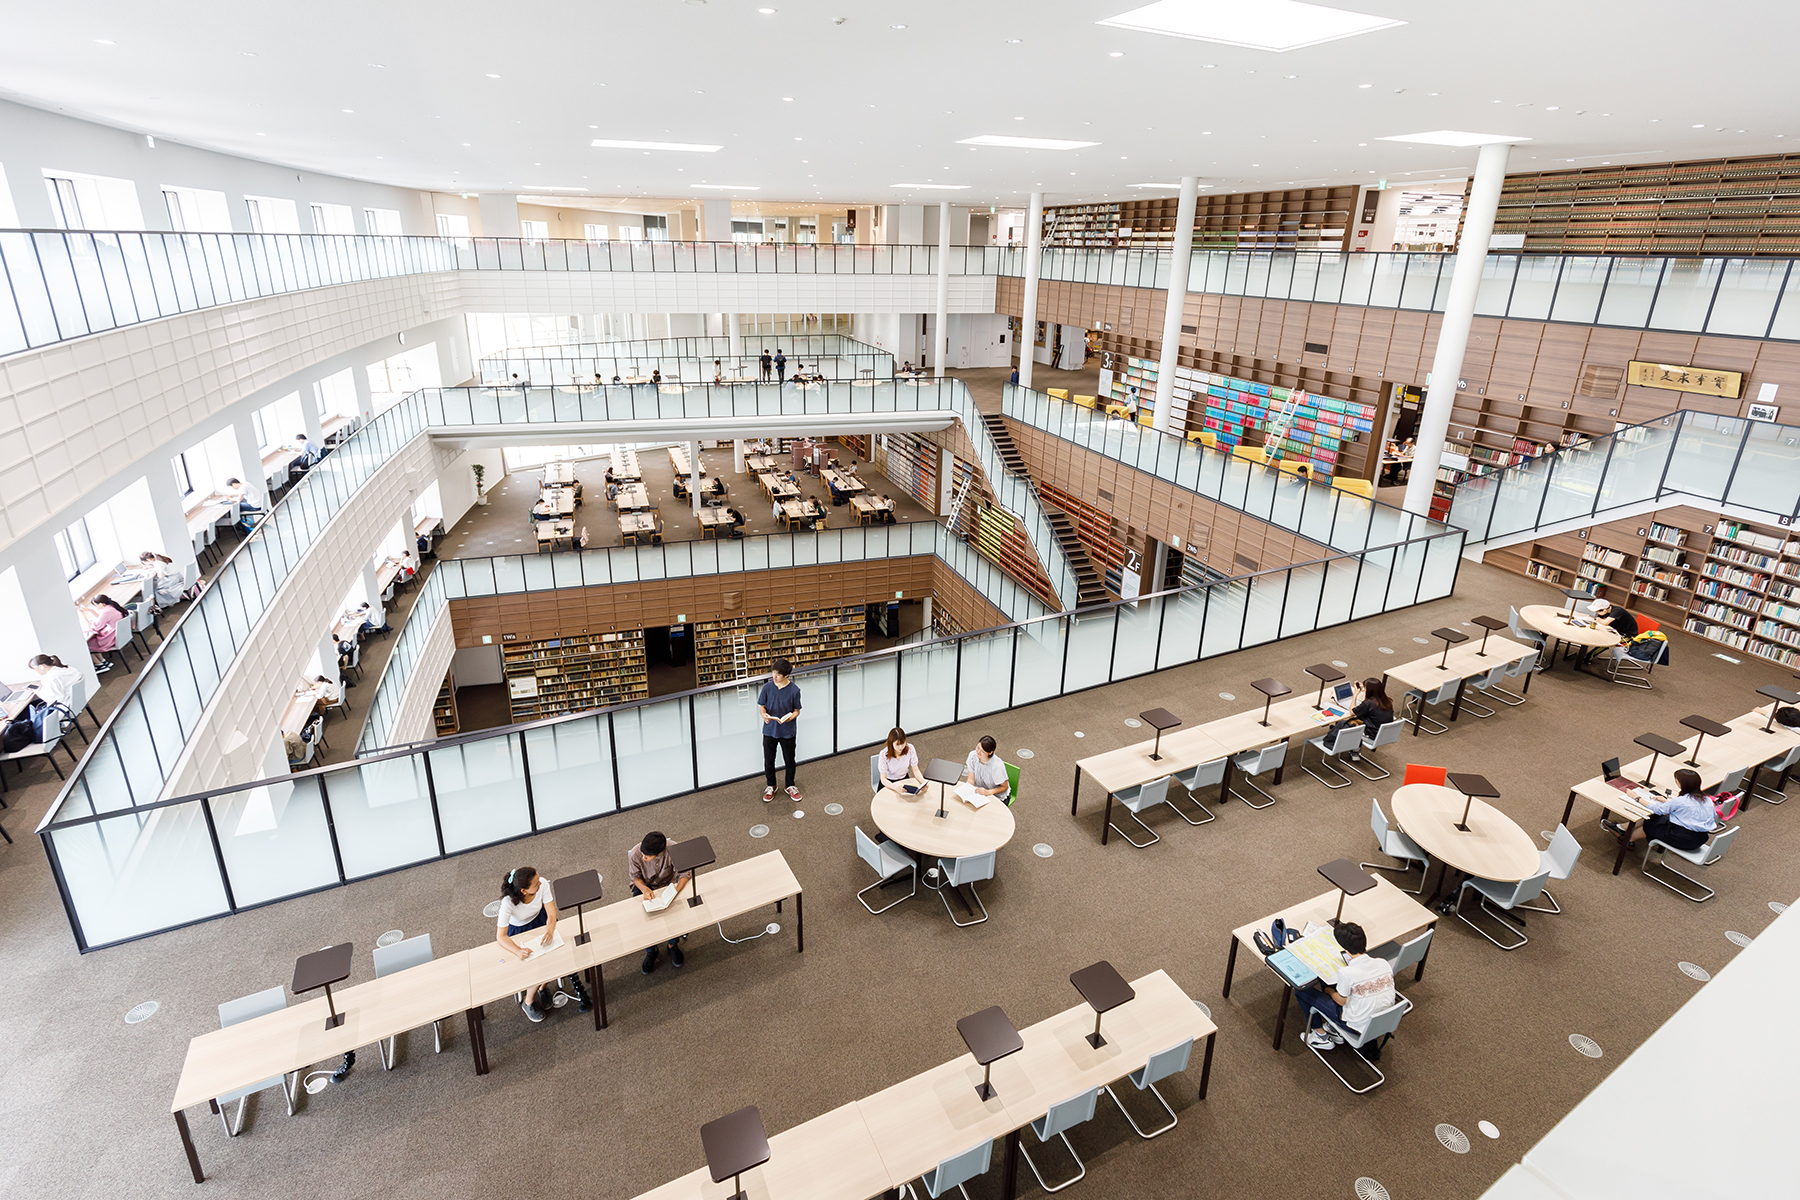 2014年9月2日(火)に学術講演会「これからの図書館と図書館員の目指すべき方向性」が開催されます